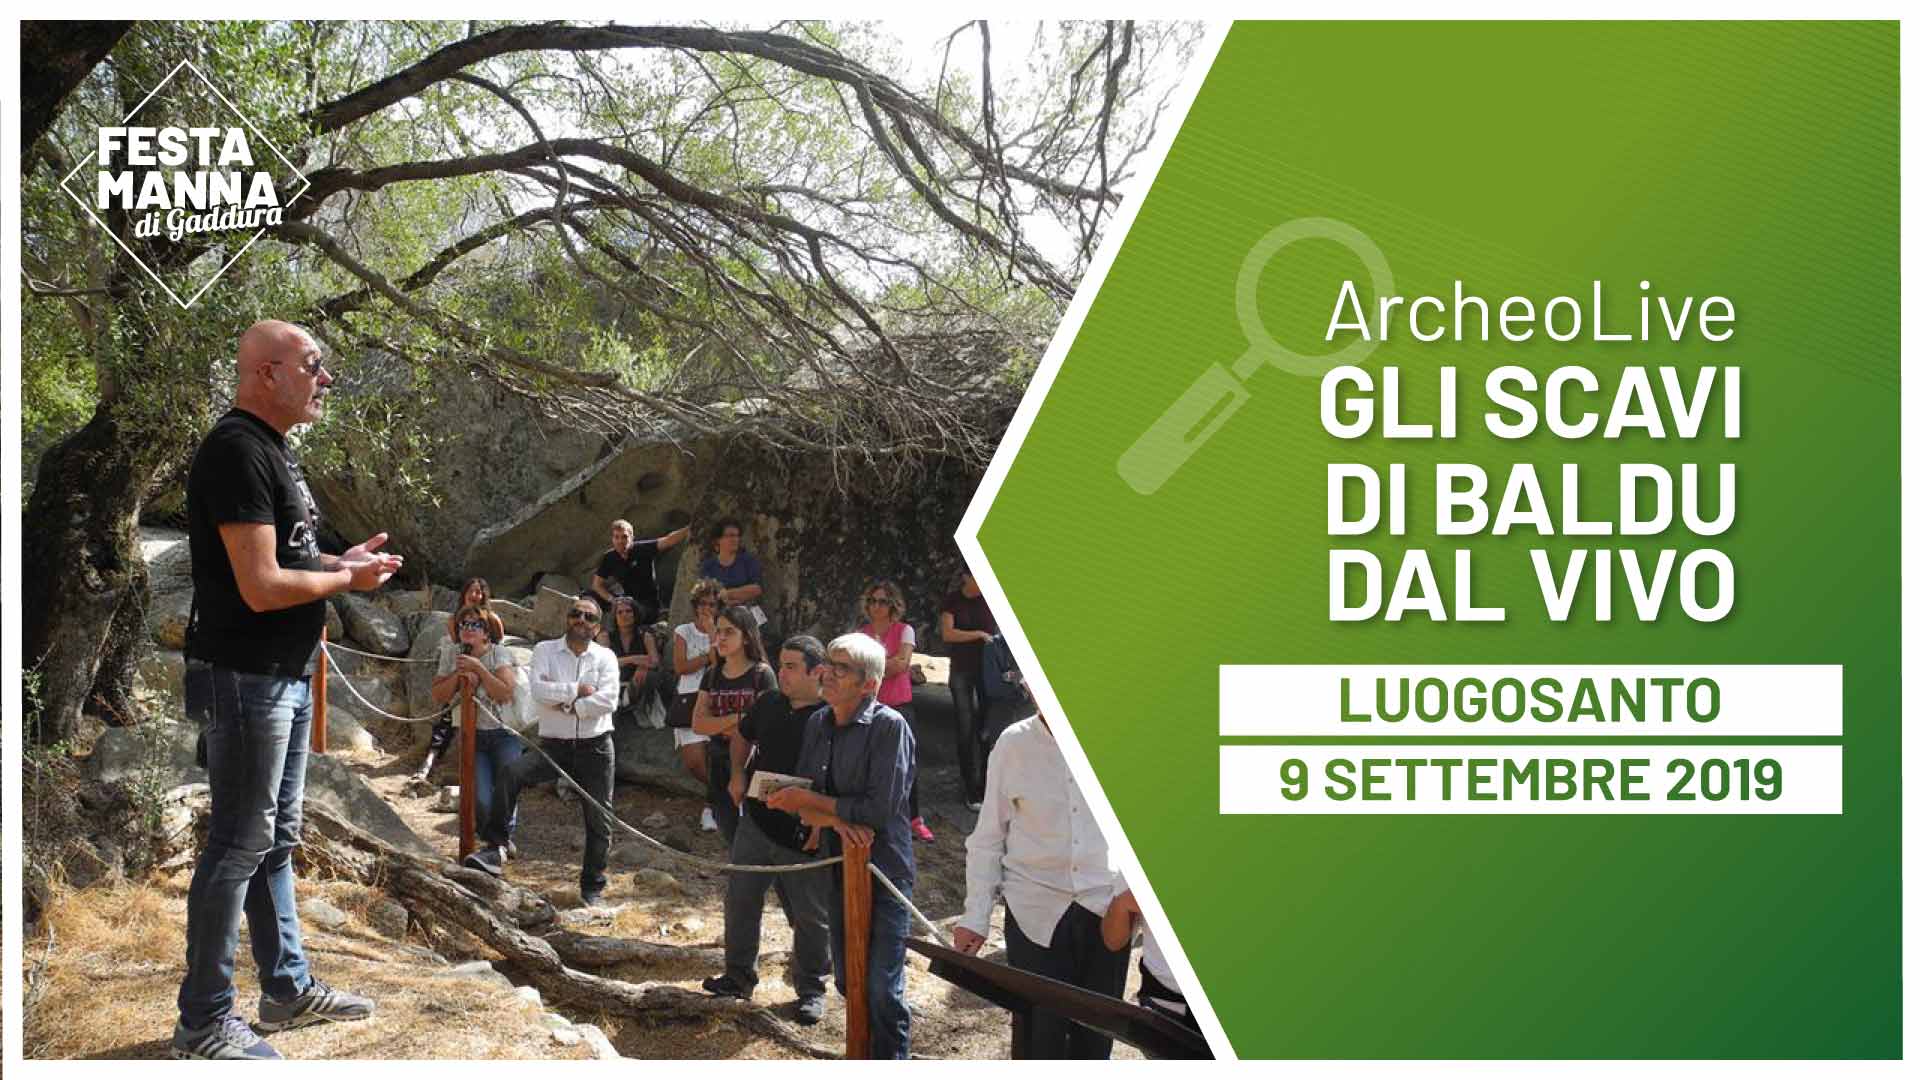 ArcheoLive. Visita guiada a la excavación arqueológica del Palacio Baldu | Festa Manna di Gaddura 2019